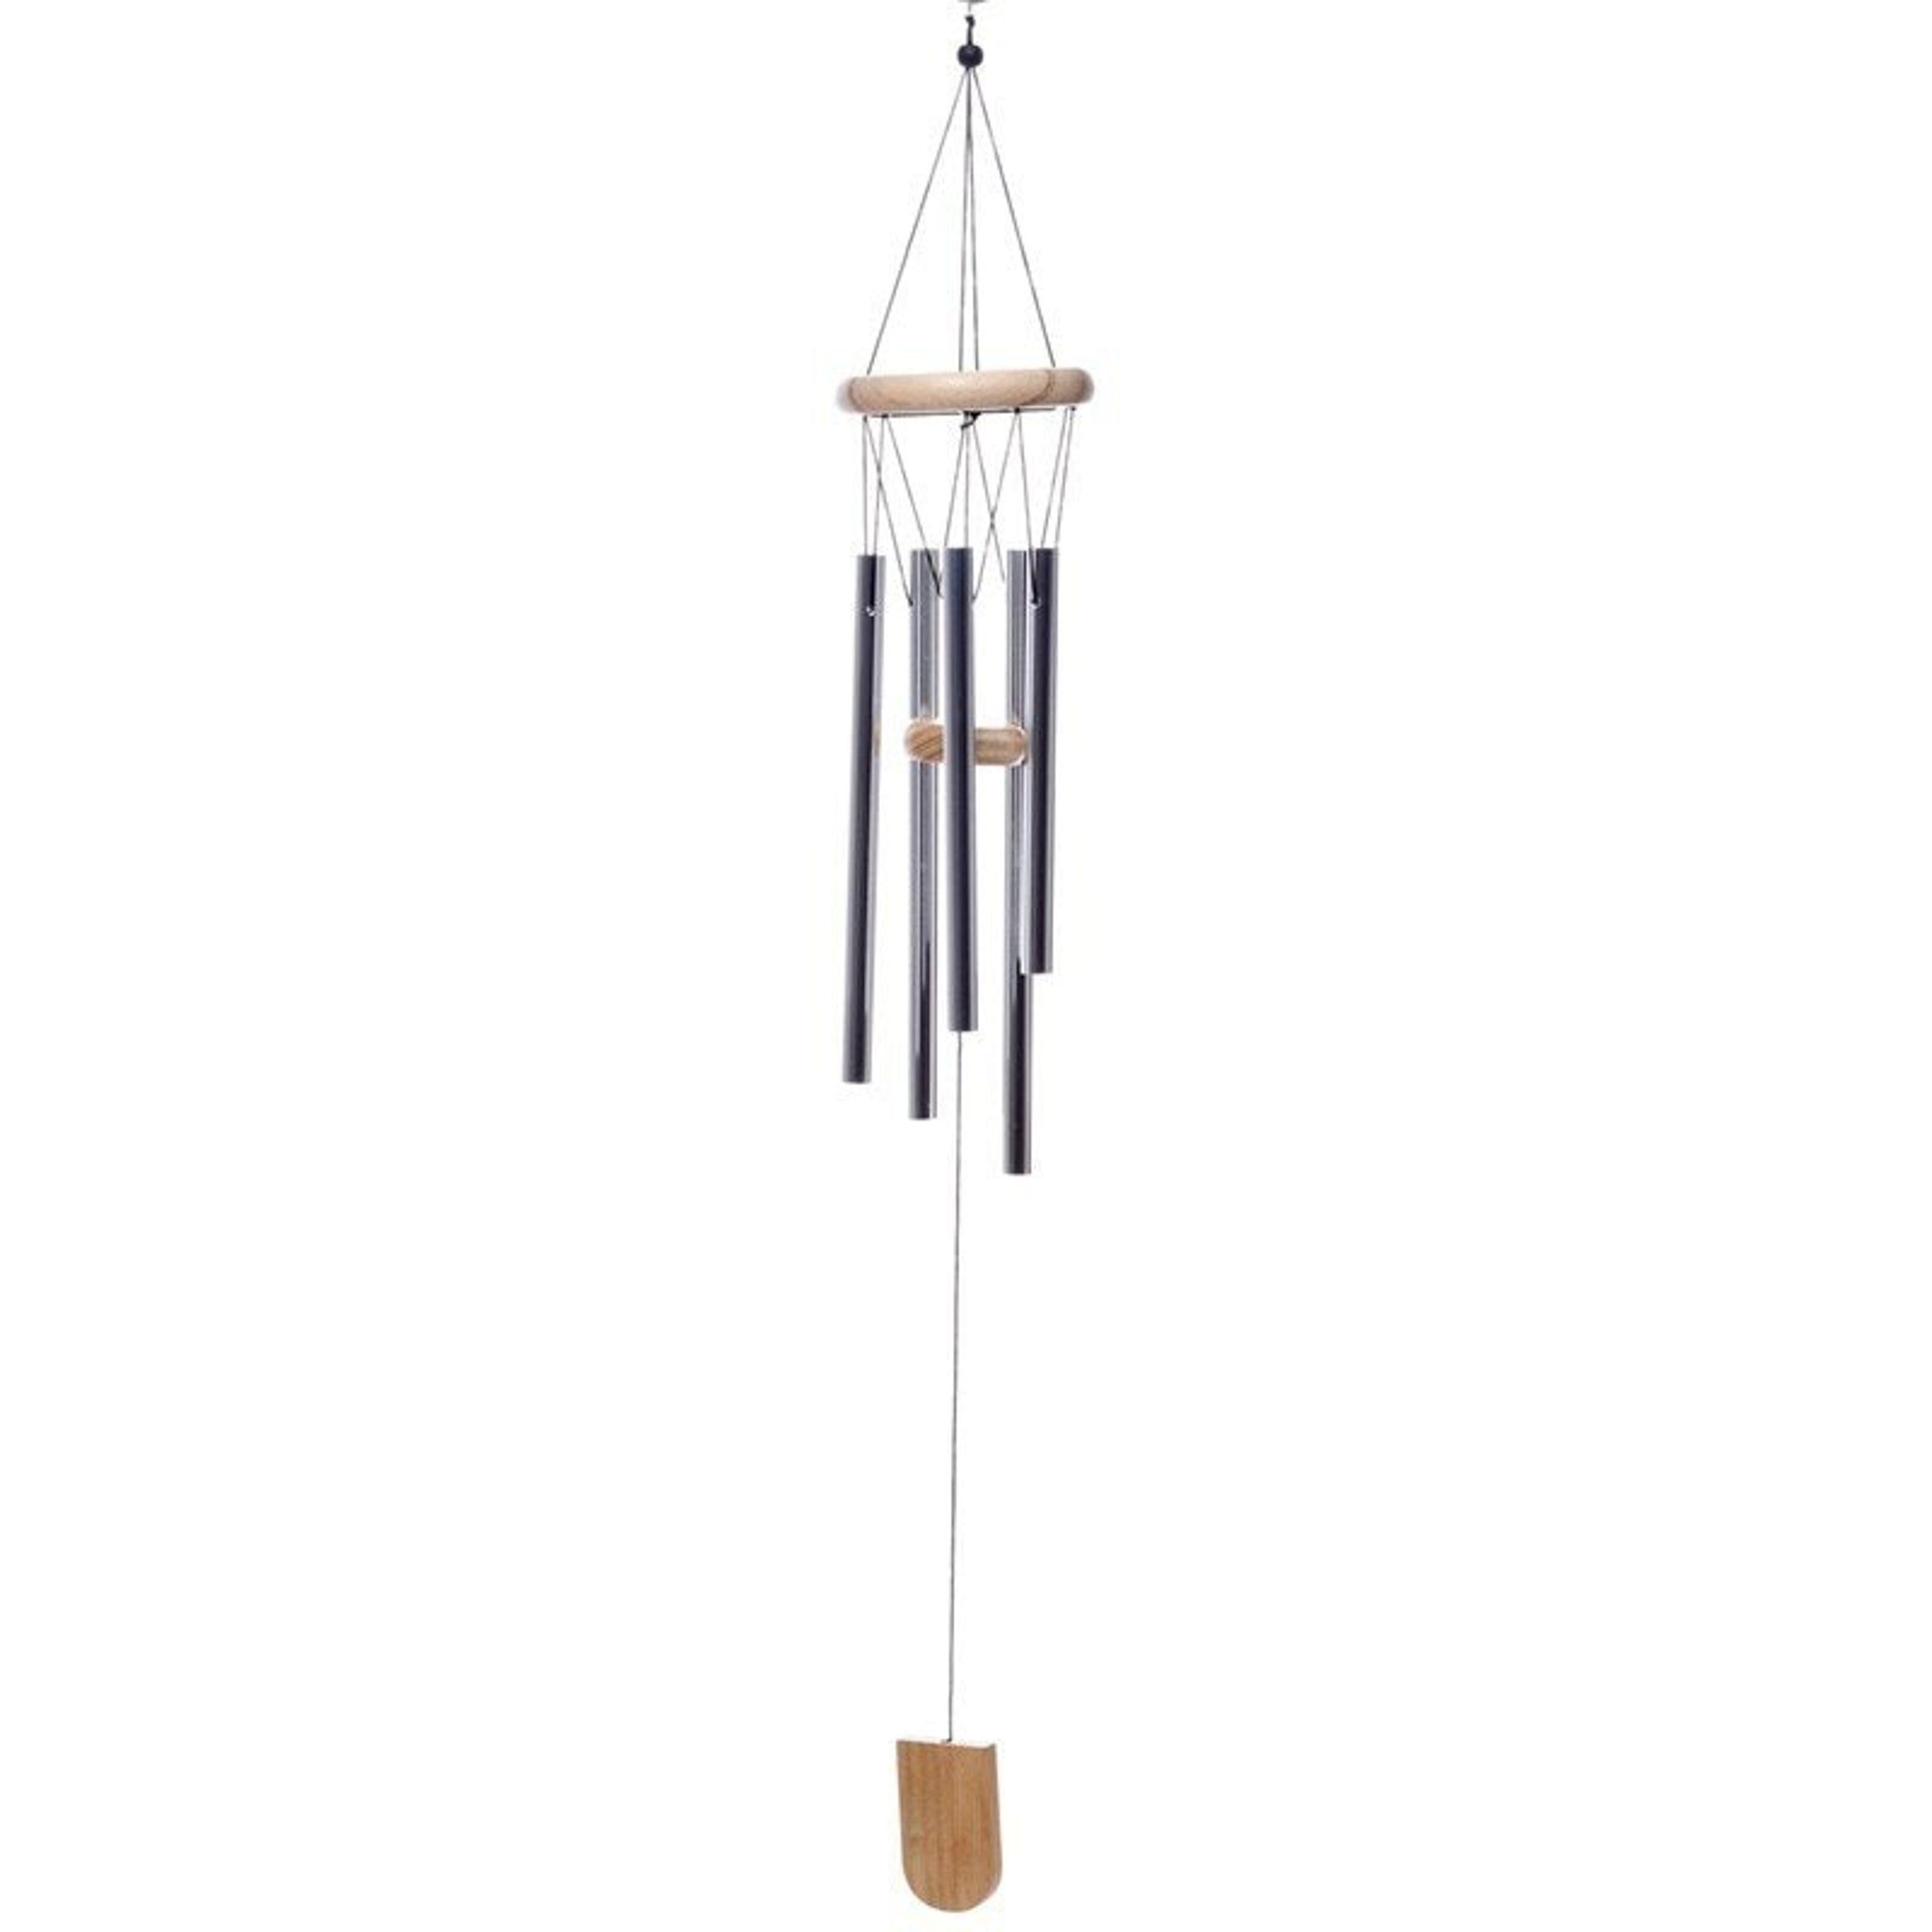 Achat Carillon à vent en bois avec tubes en métal 58cm en gros